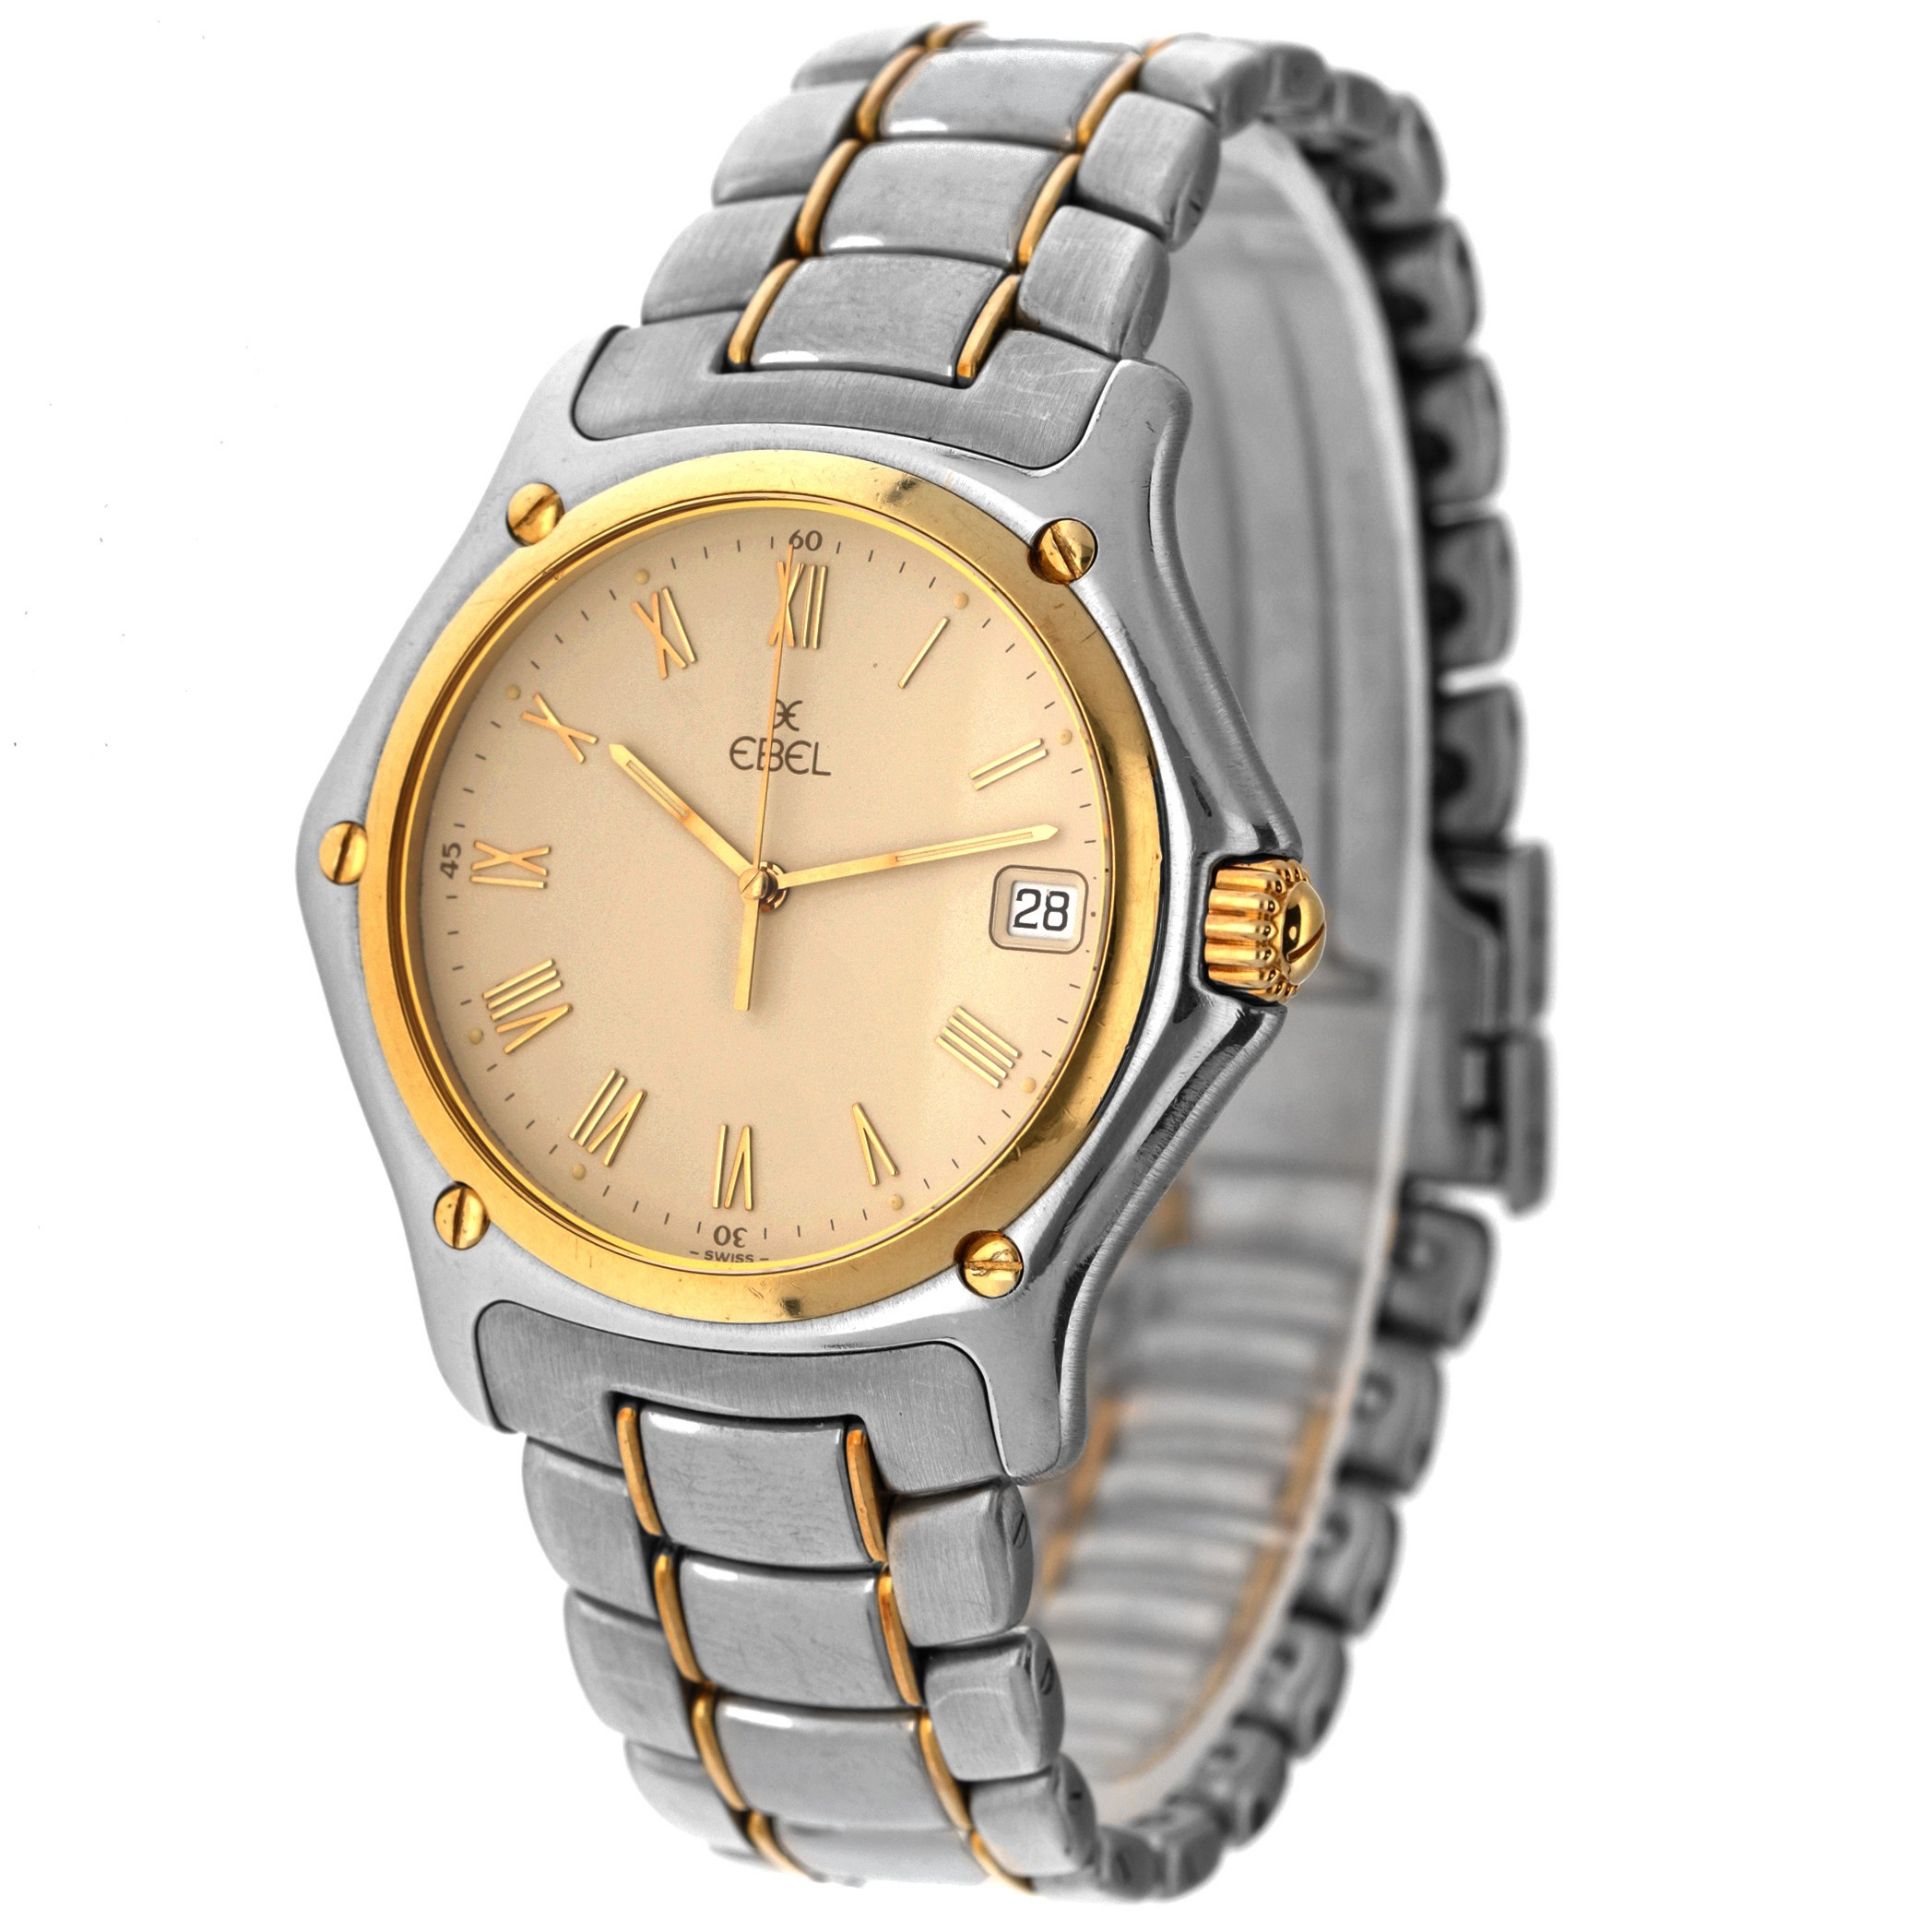 No Reserve - Ebel 1911 1187916 - Men's watch. - Image 2 of 5